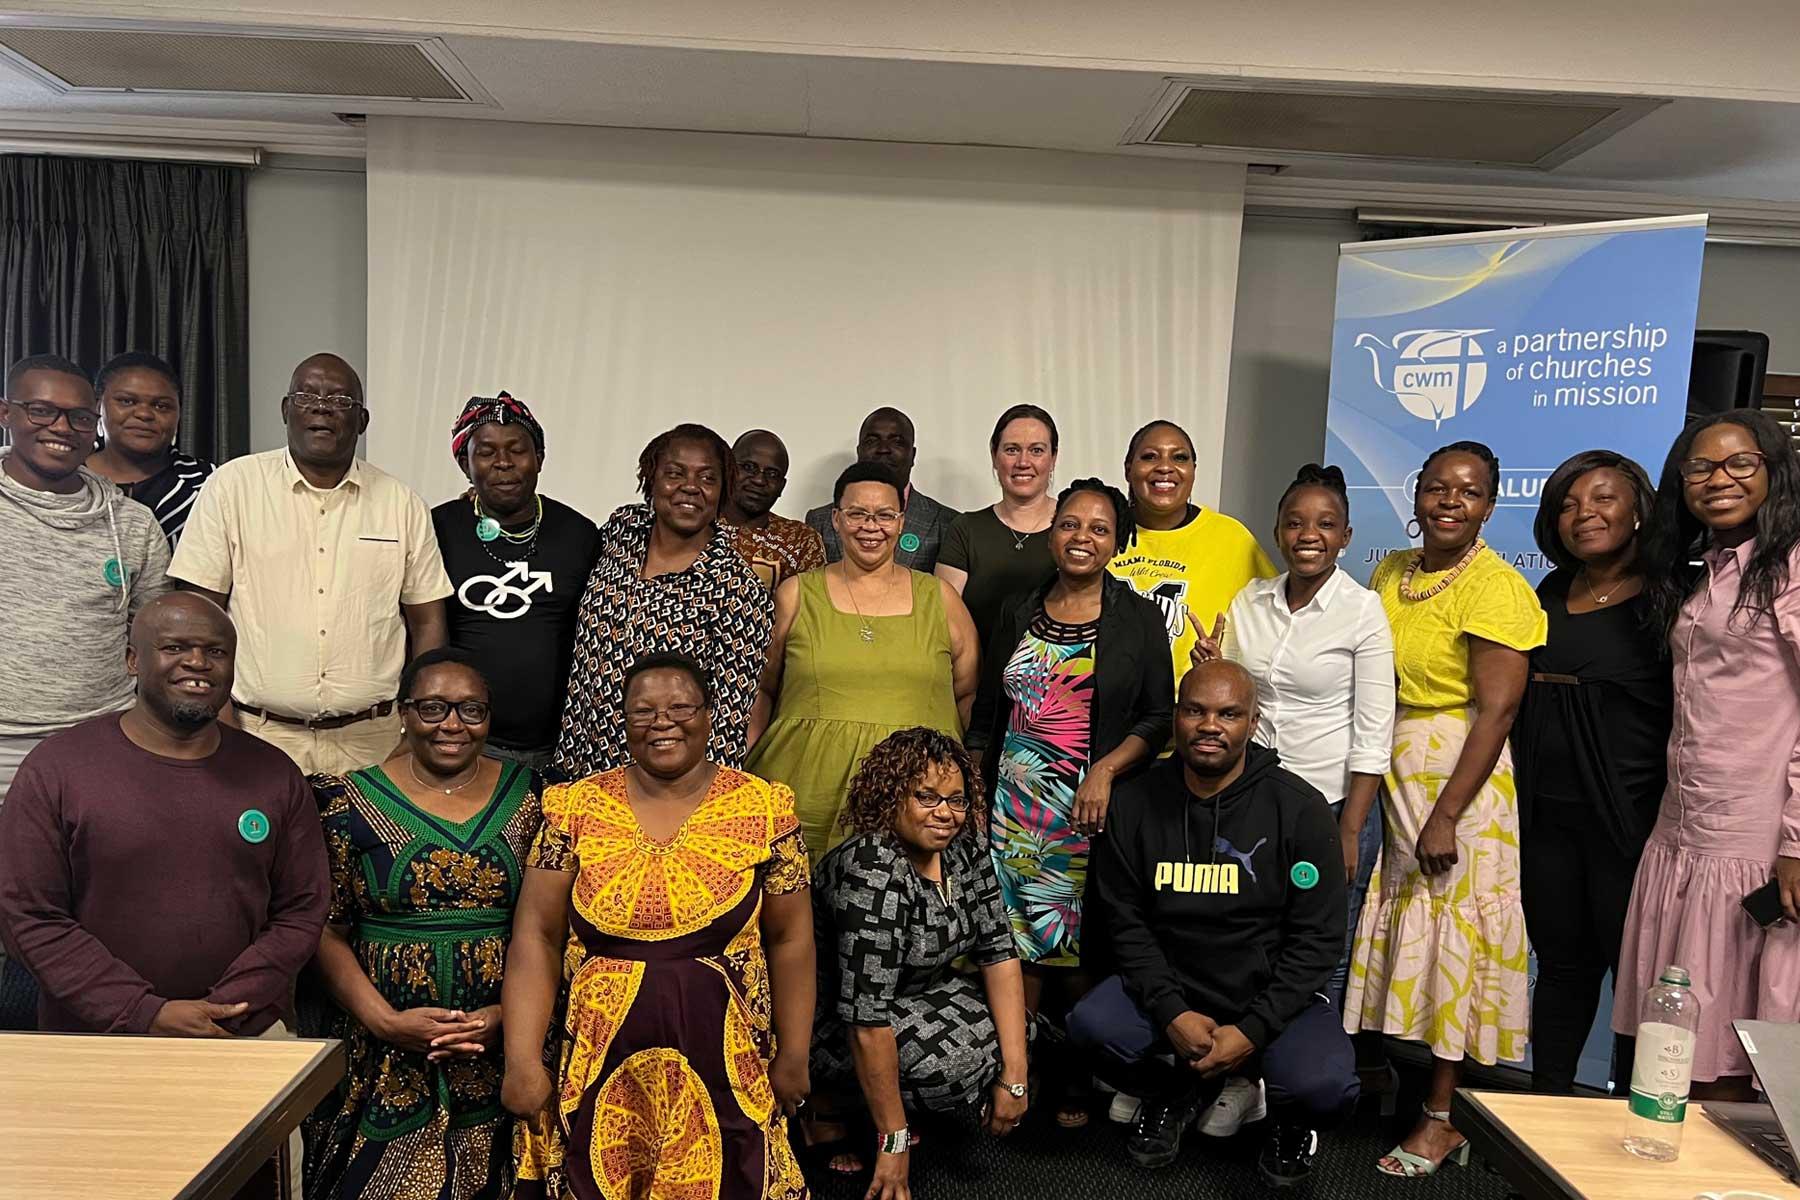 Participantes en una mesa redonda del Consejo para la Misión Mundial sobre la violencia de género que culminó en el diálogo organizado conjuntamente con la FLM y el CMI. Fotografía: CWM/Damon Mkandawire